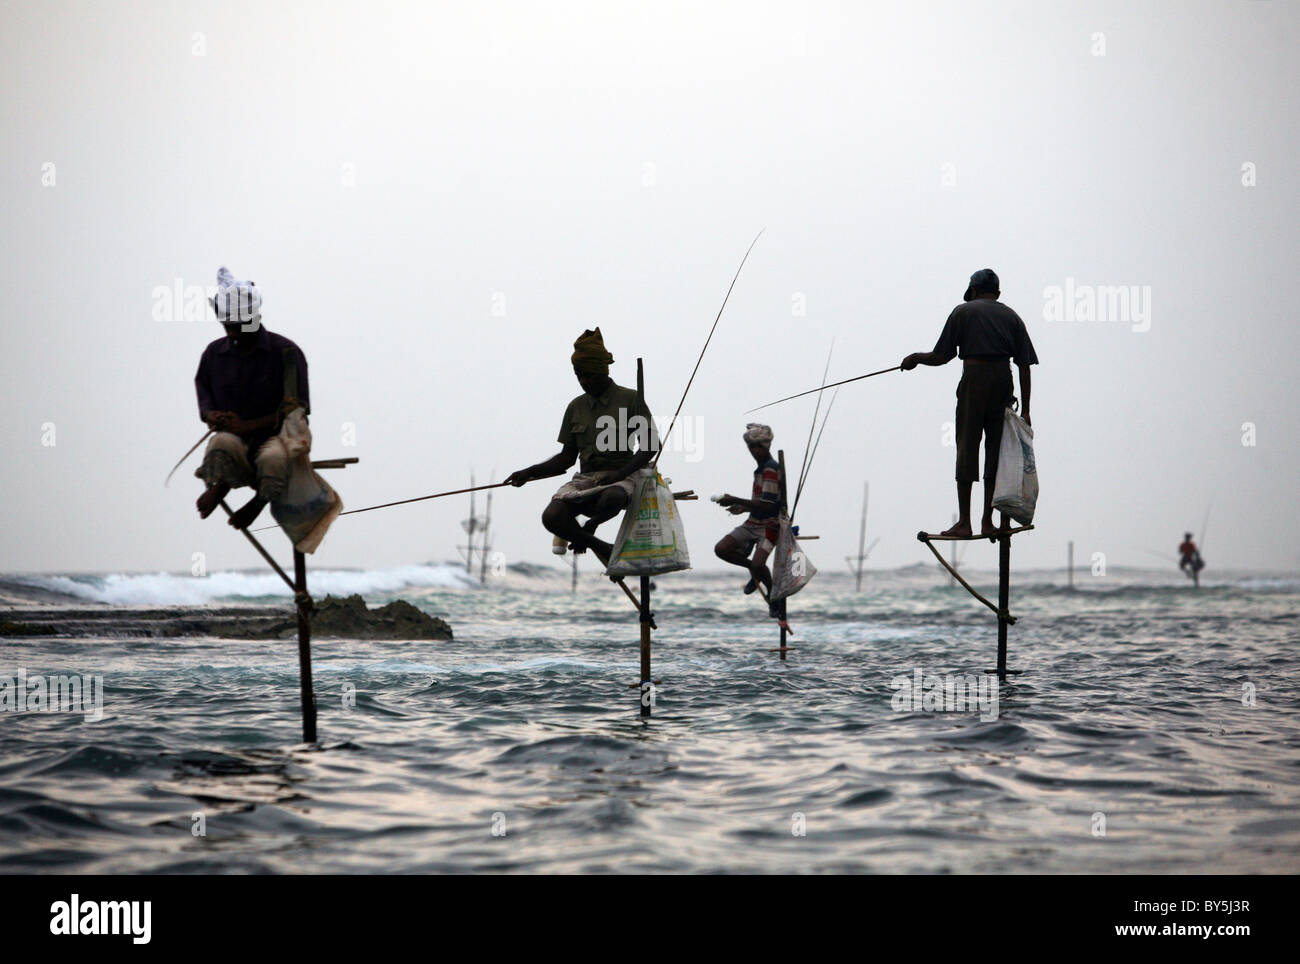 Pêcheur sur pilotis près de la ville du sud de Sri Lanka Unawatuna. Banque D'Images